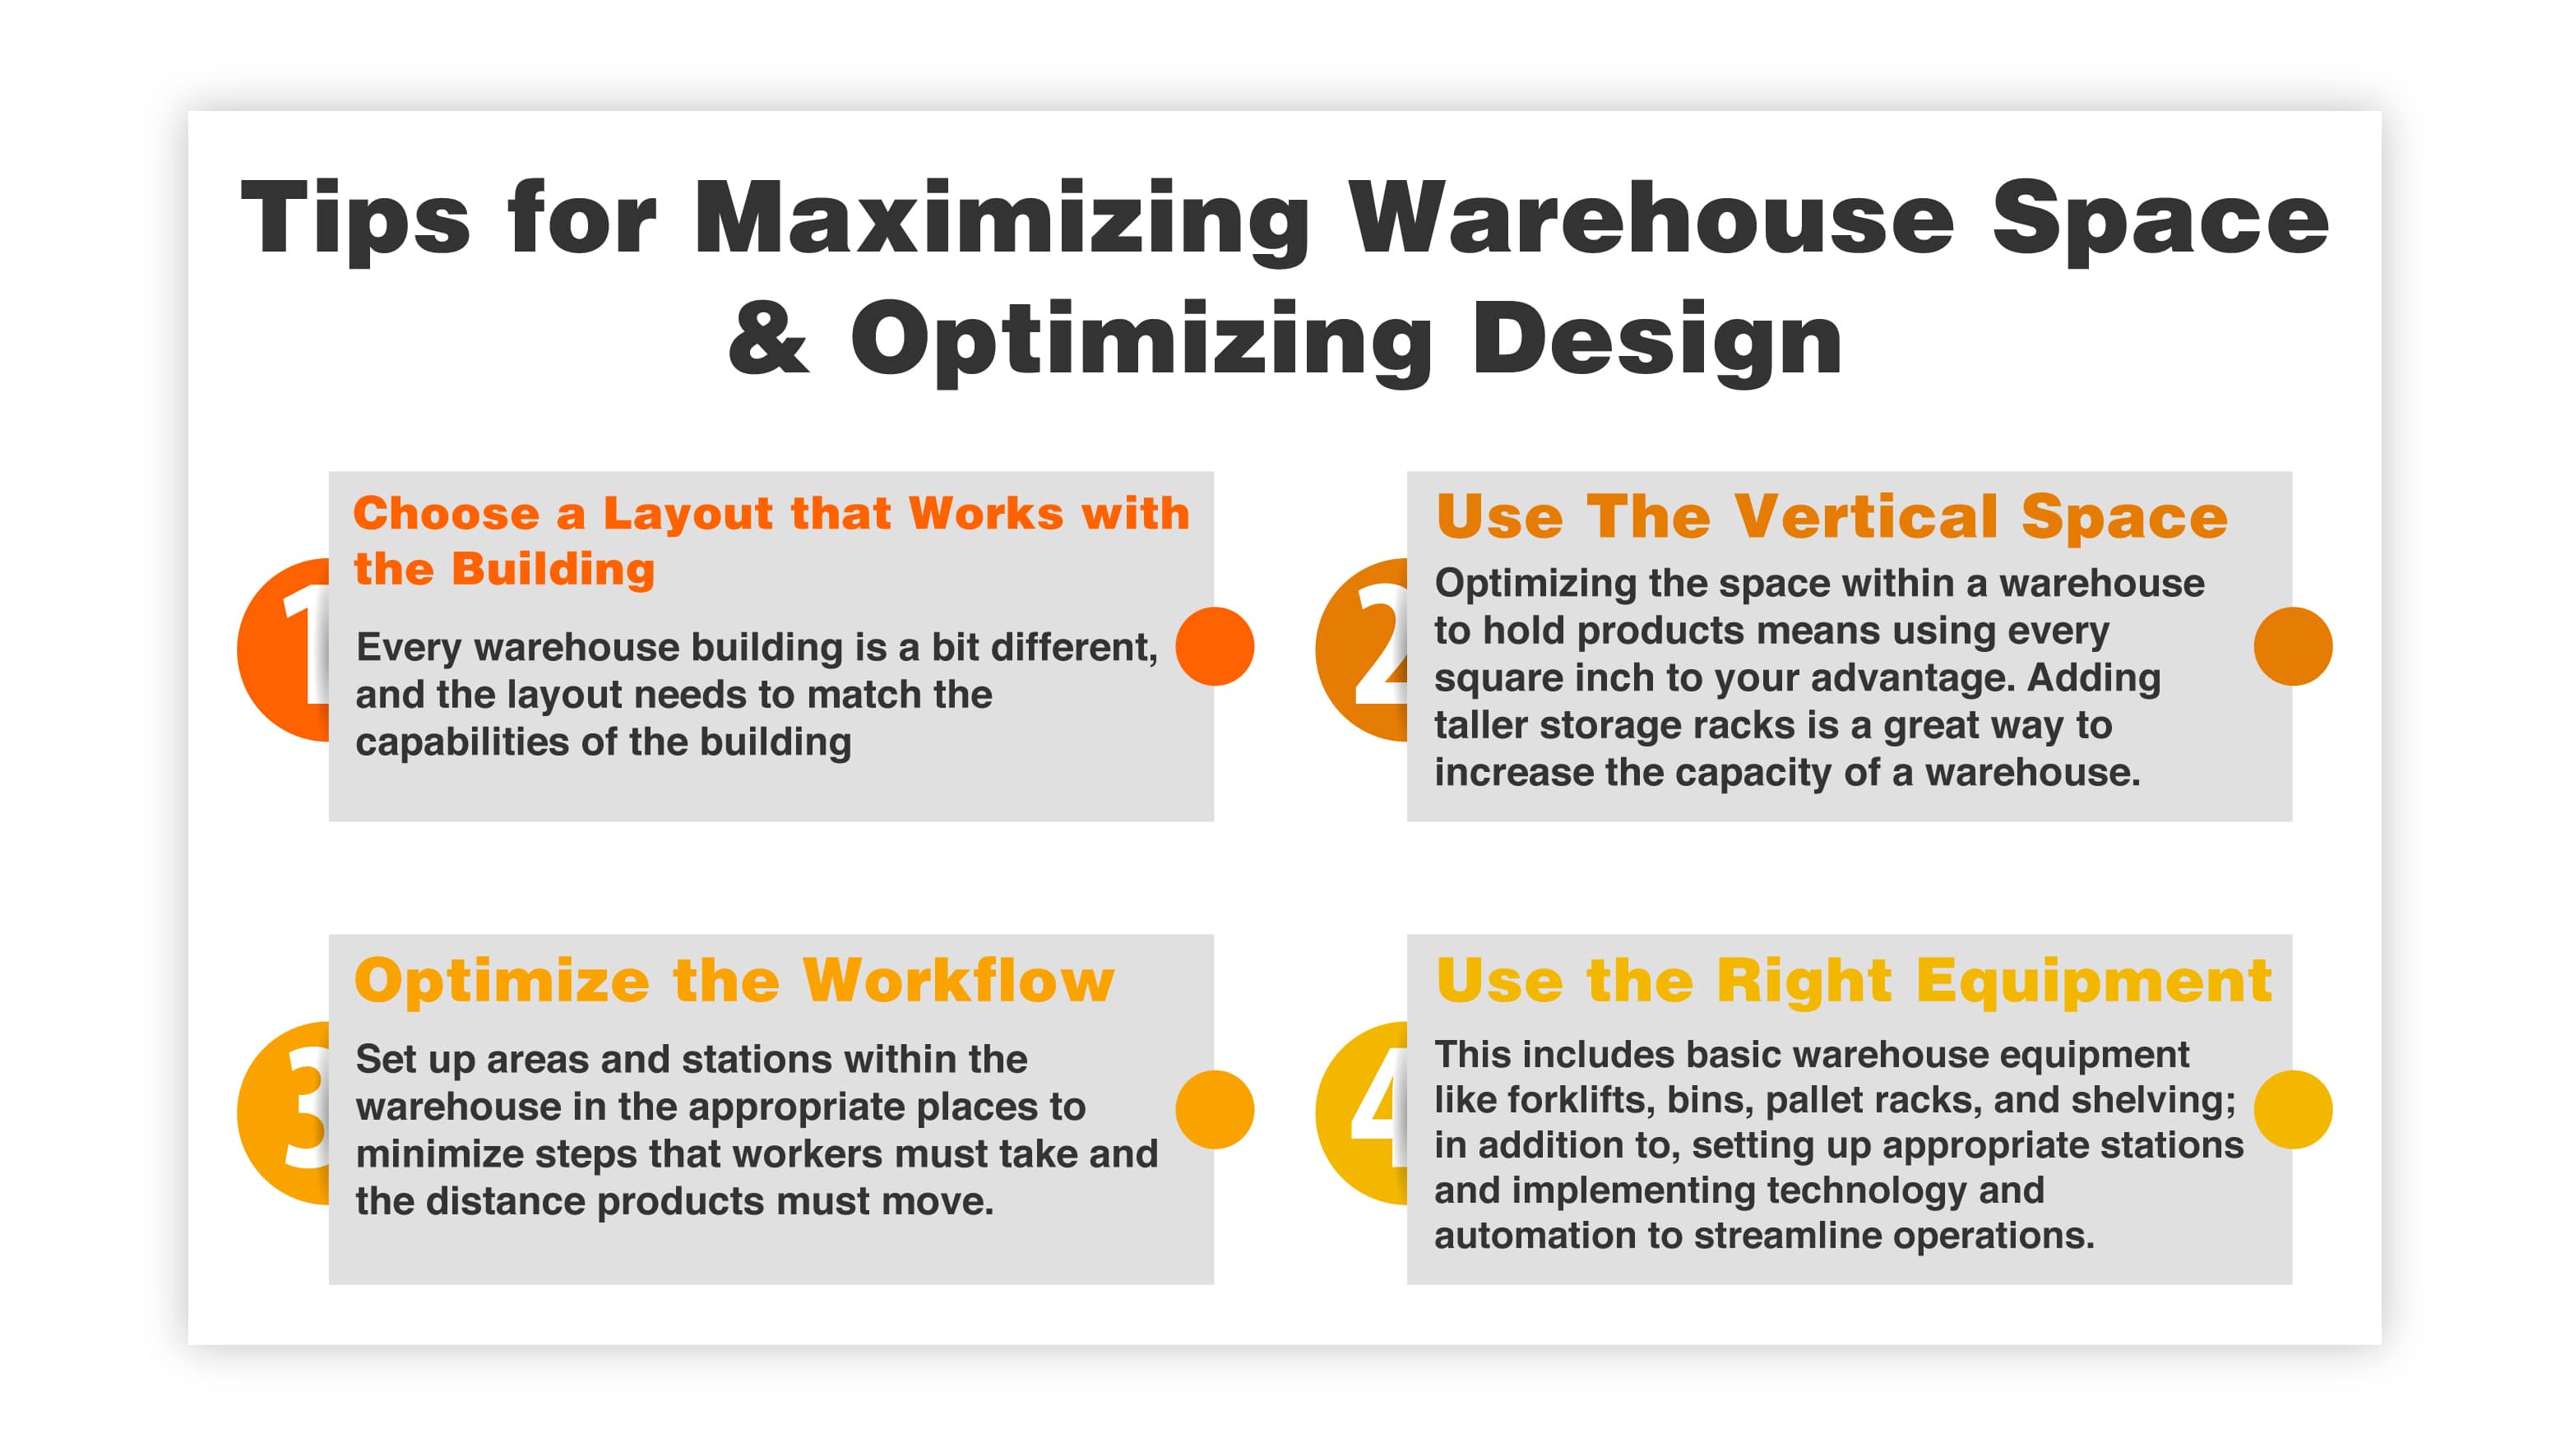 Tips for Maximizing Warehouse Space & Optimizing Design